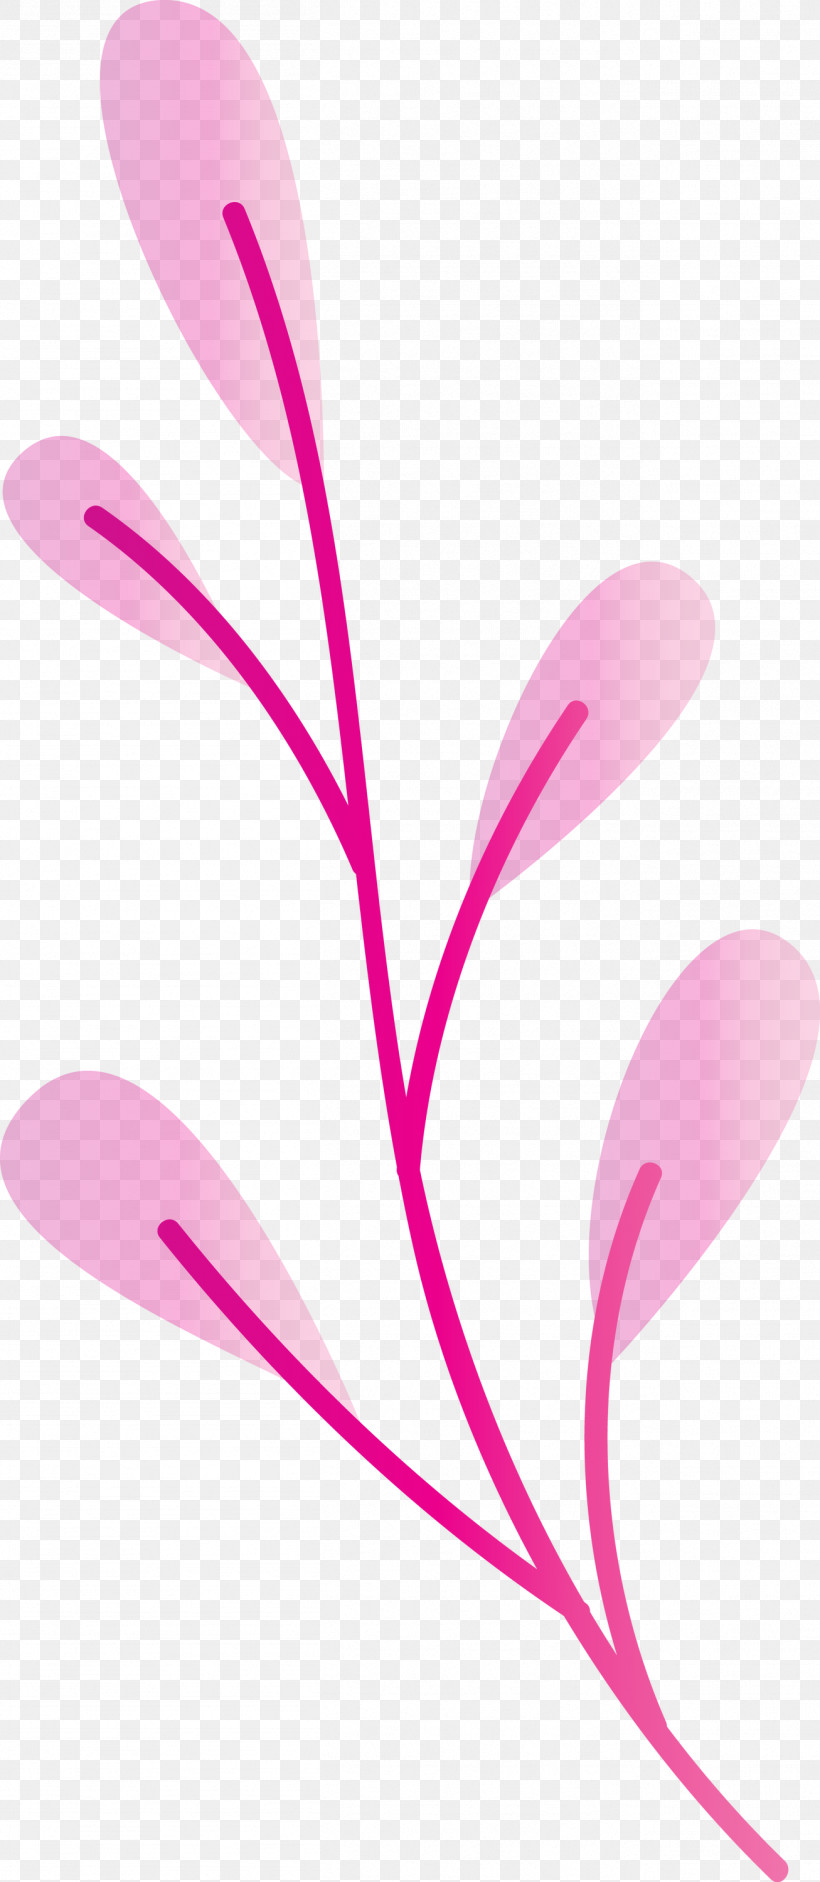 Plant Stem Petal Leaf Branch Pink M, PNG, 1307x3000px, Plant Stem, Biology, Branch, Flower, Leaf Download Free